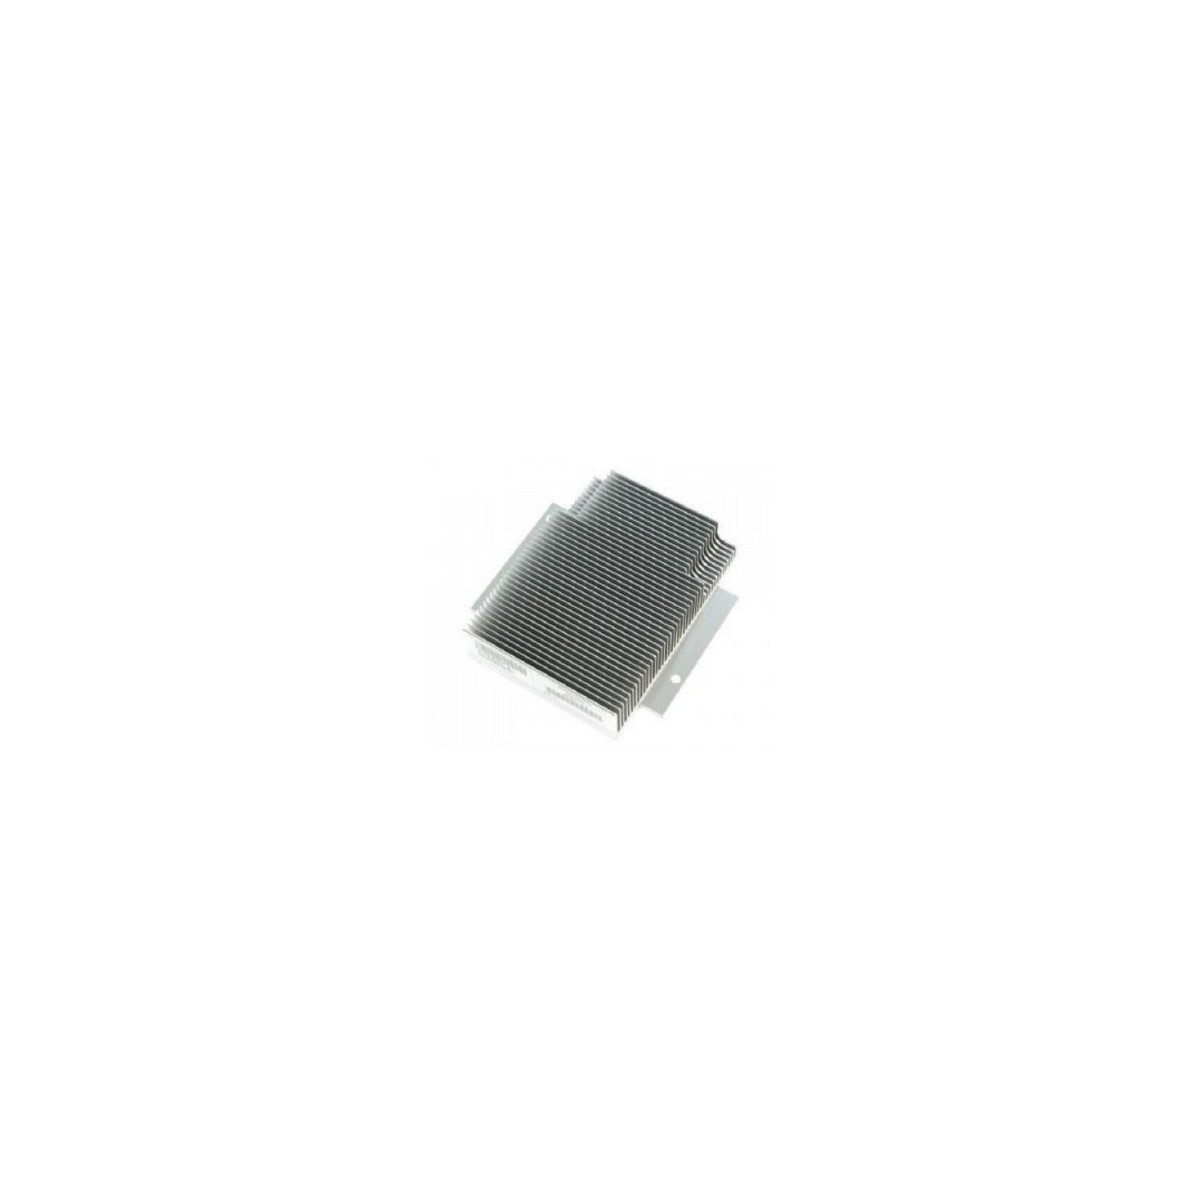 HPE 826706-B21 - Processor - Heatsink - HPE DL380 Gen10 - Silver - 220 mm - 280 mm